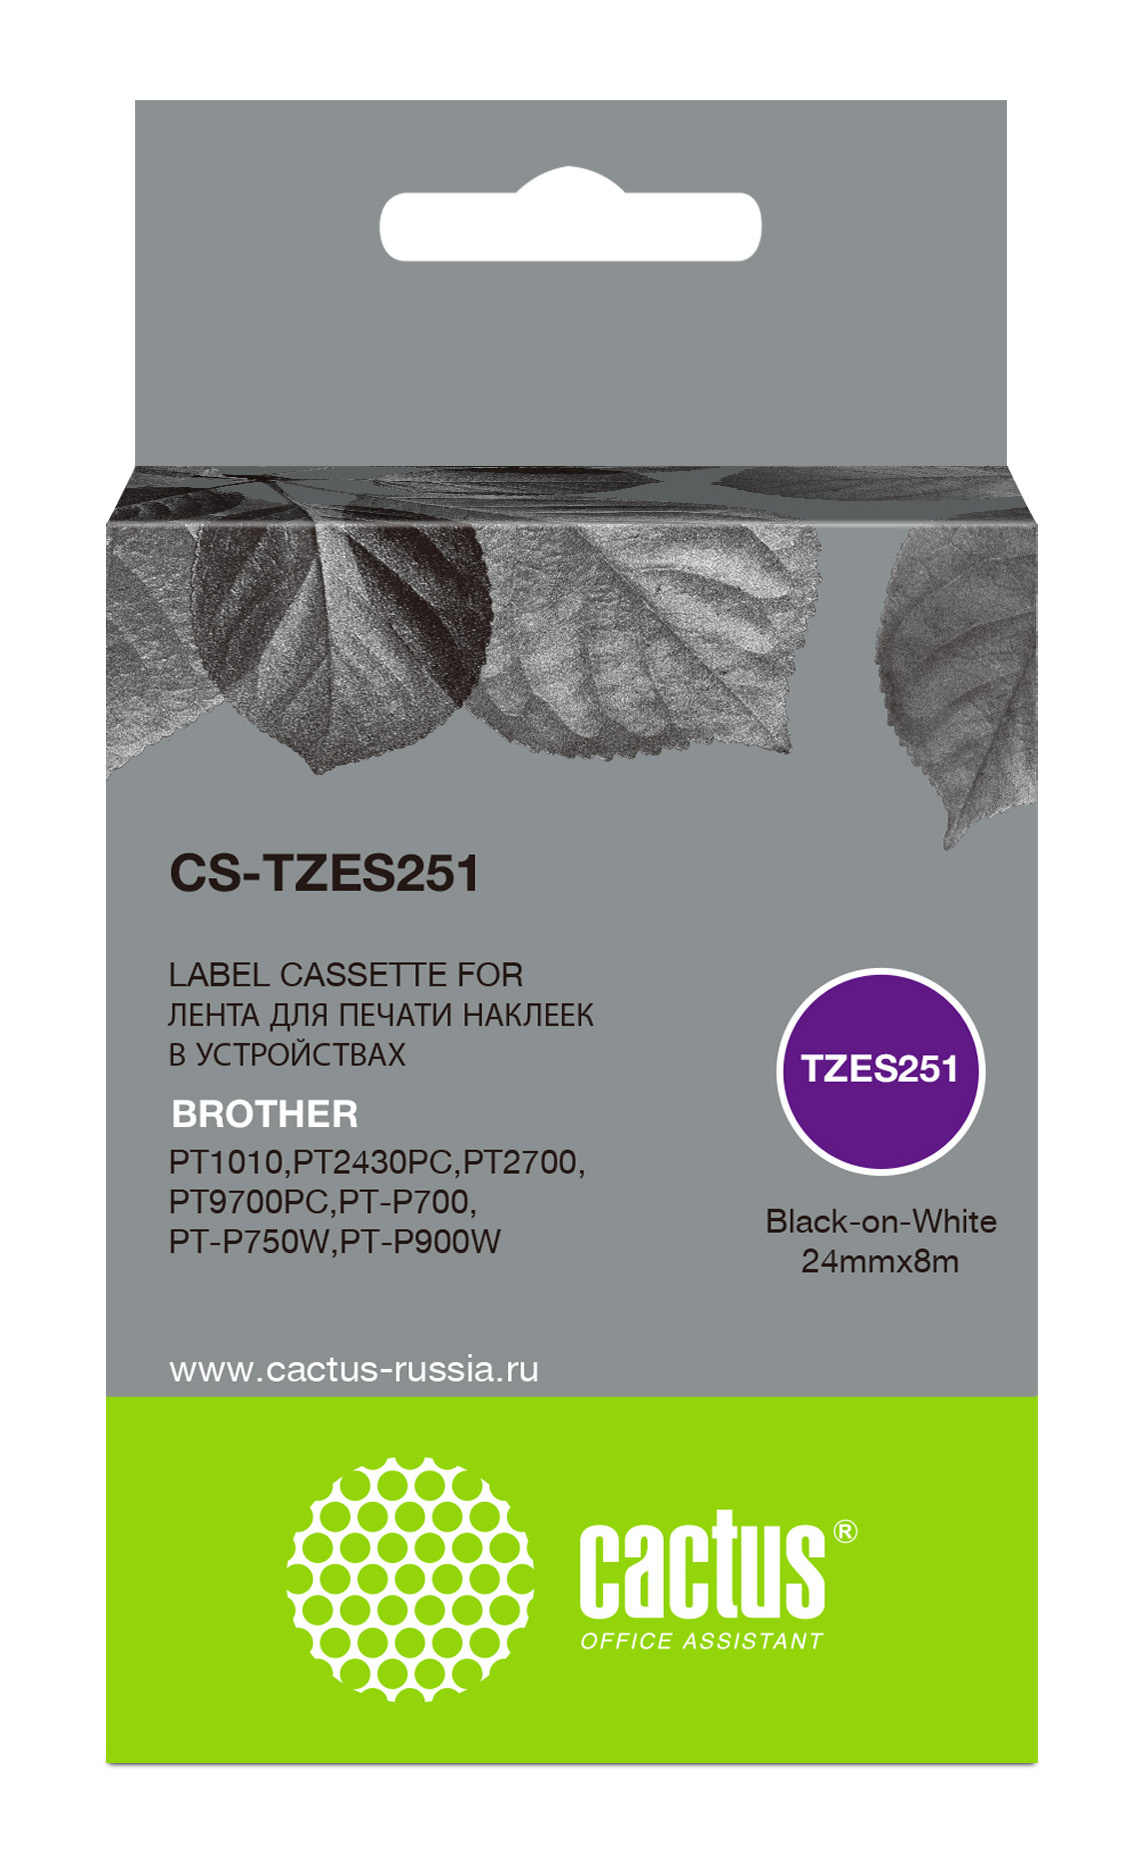   Cactus CS-TZES251 TZe-S251   Brother 1010/1280/1280VP/2700VP